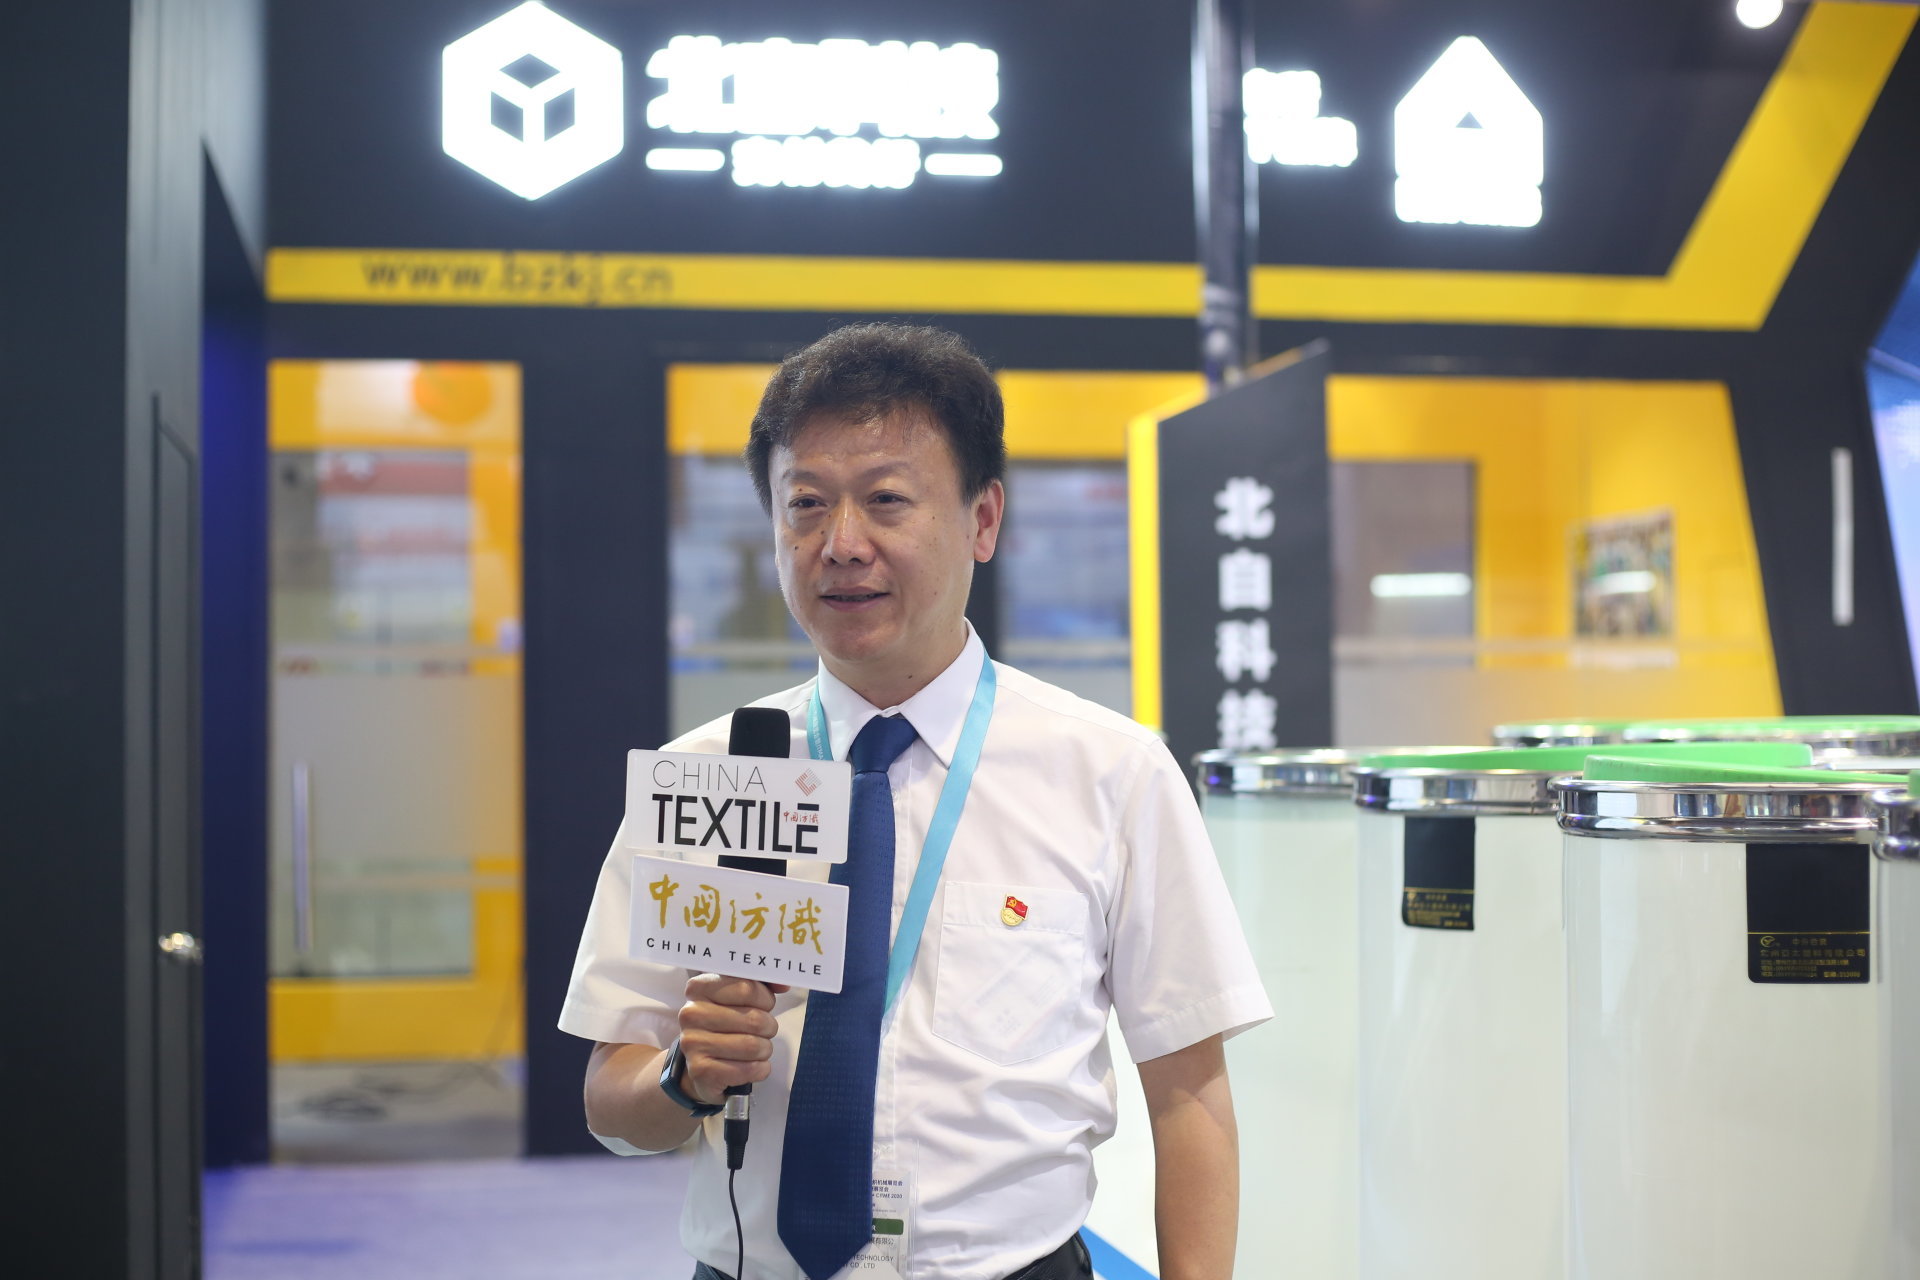 【中国纺织】太阳集团tcy8722：纺织行业先进智能物流系统解决方案的提供者